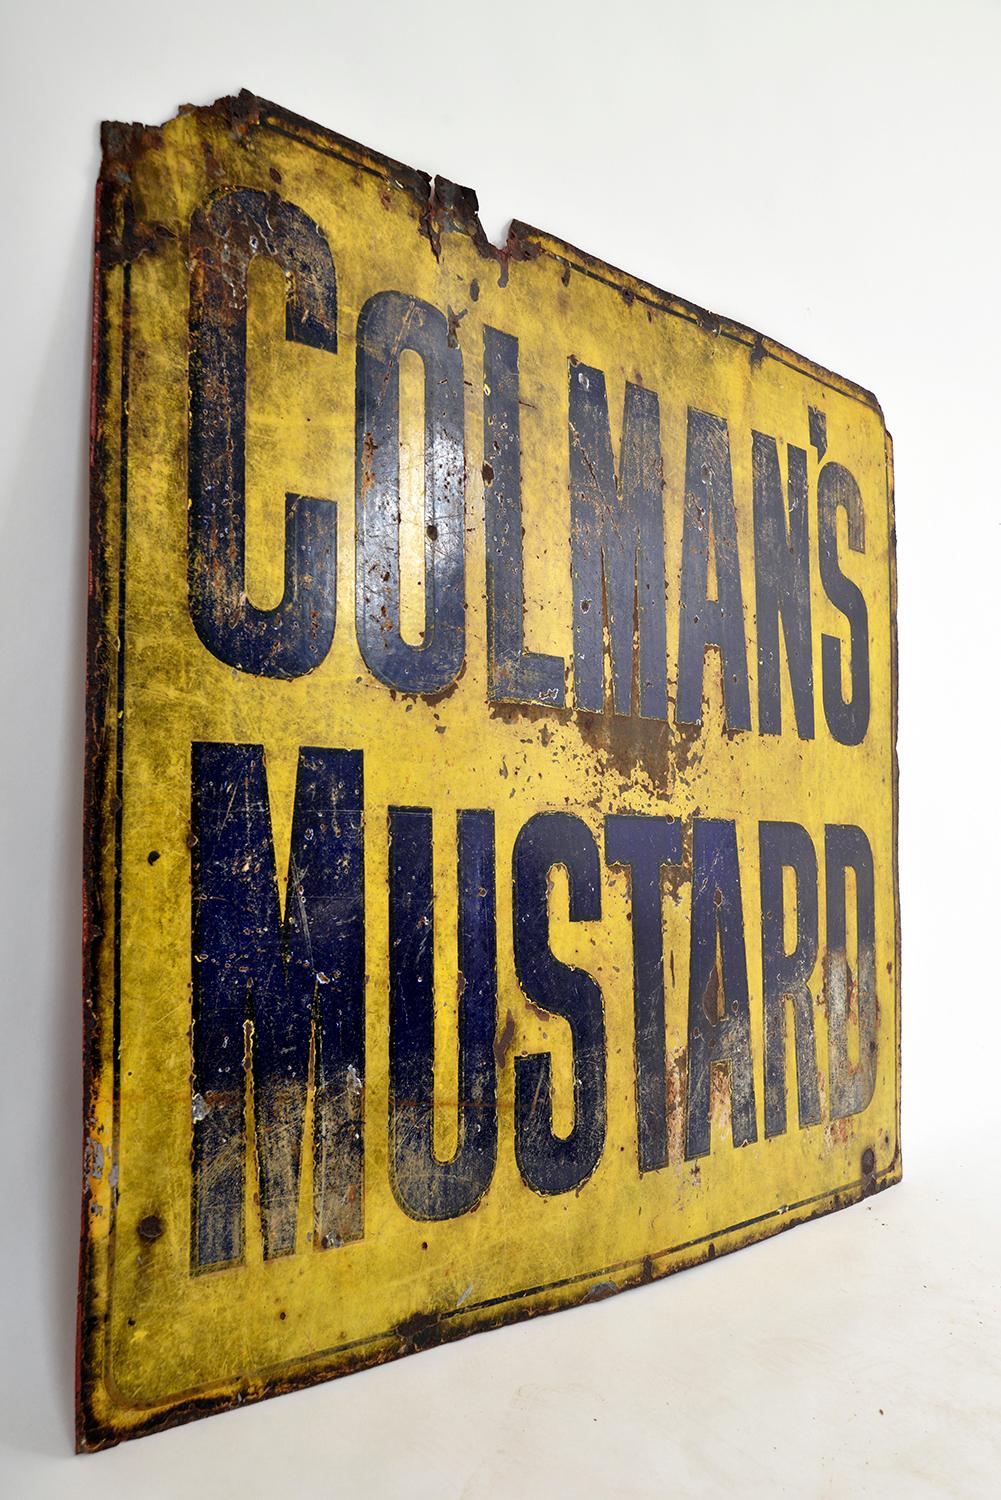 colmans mustard sign